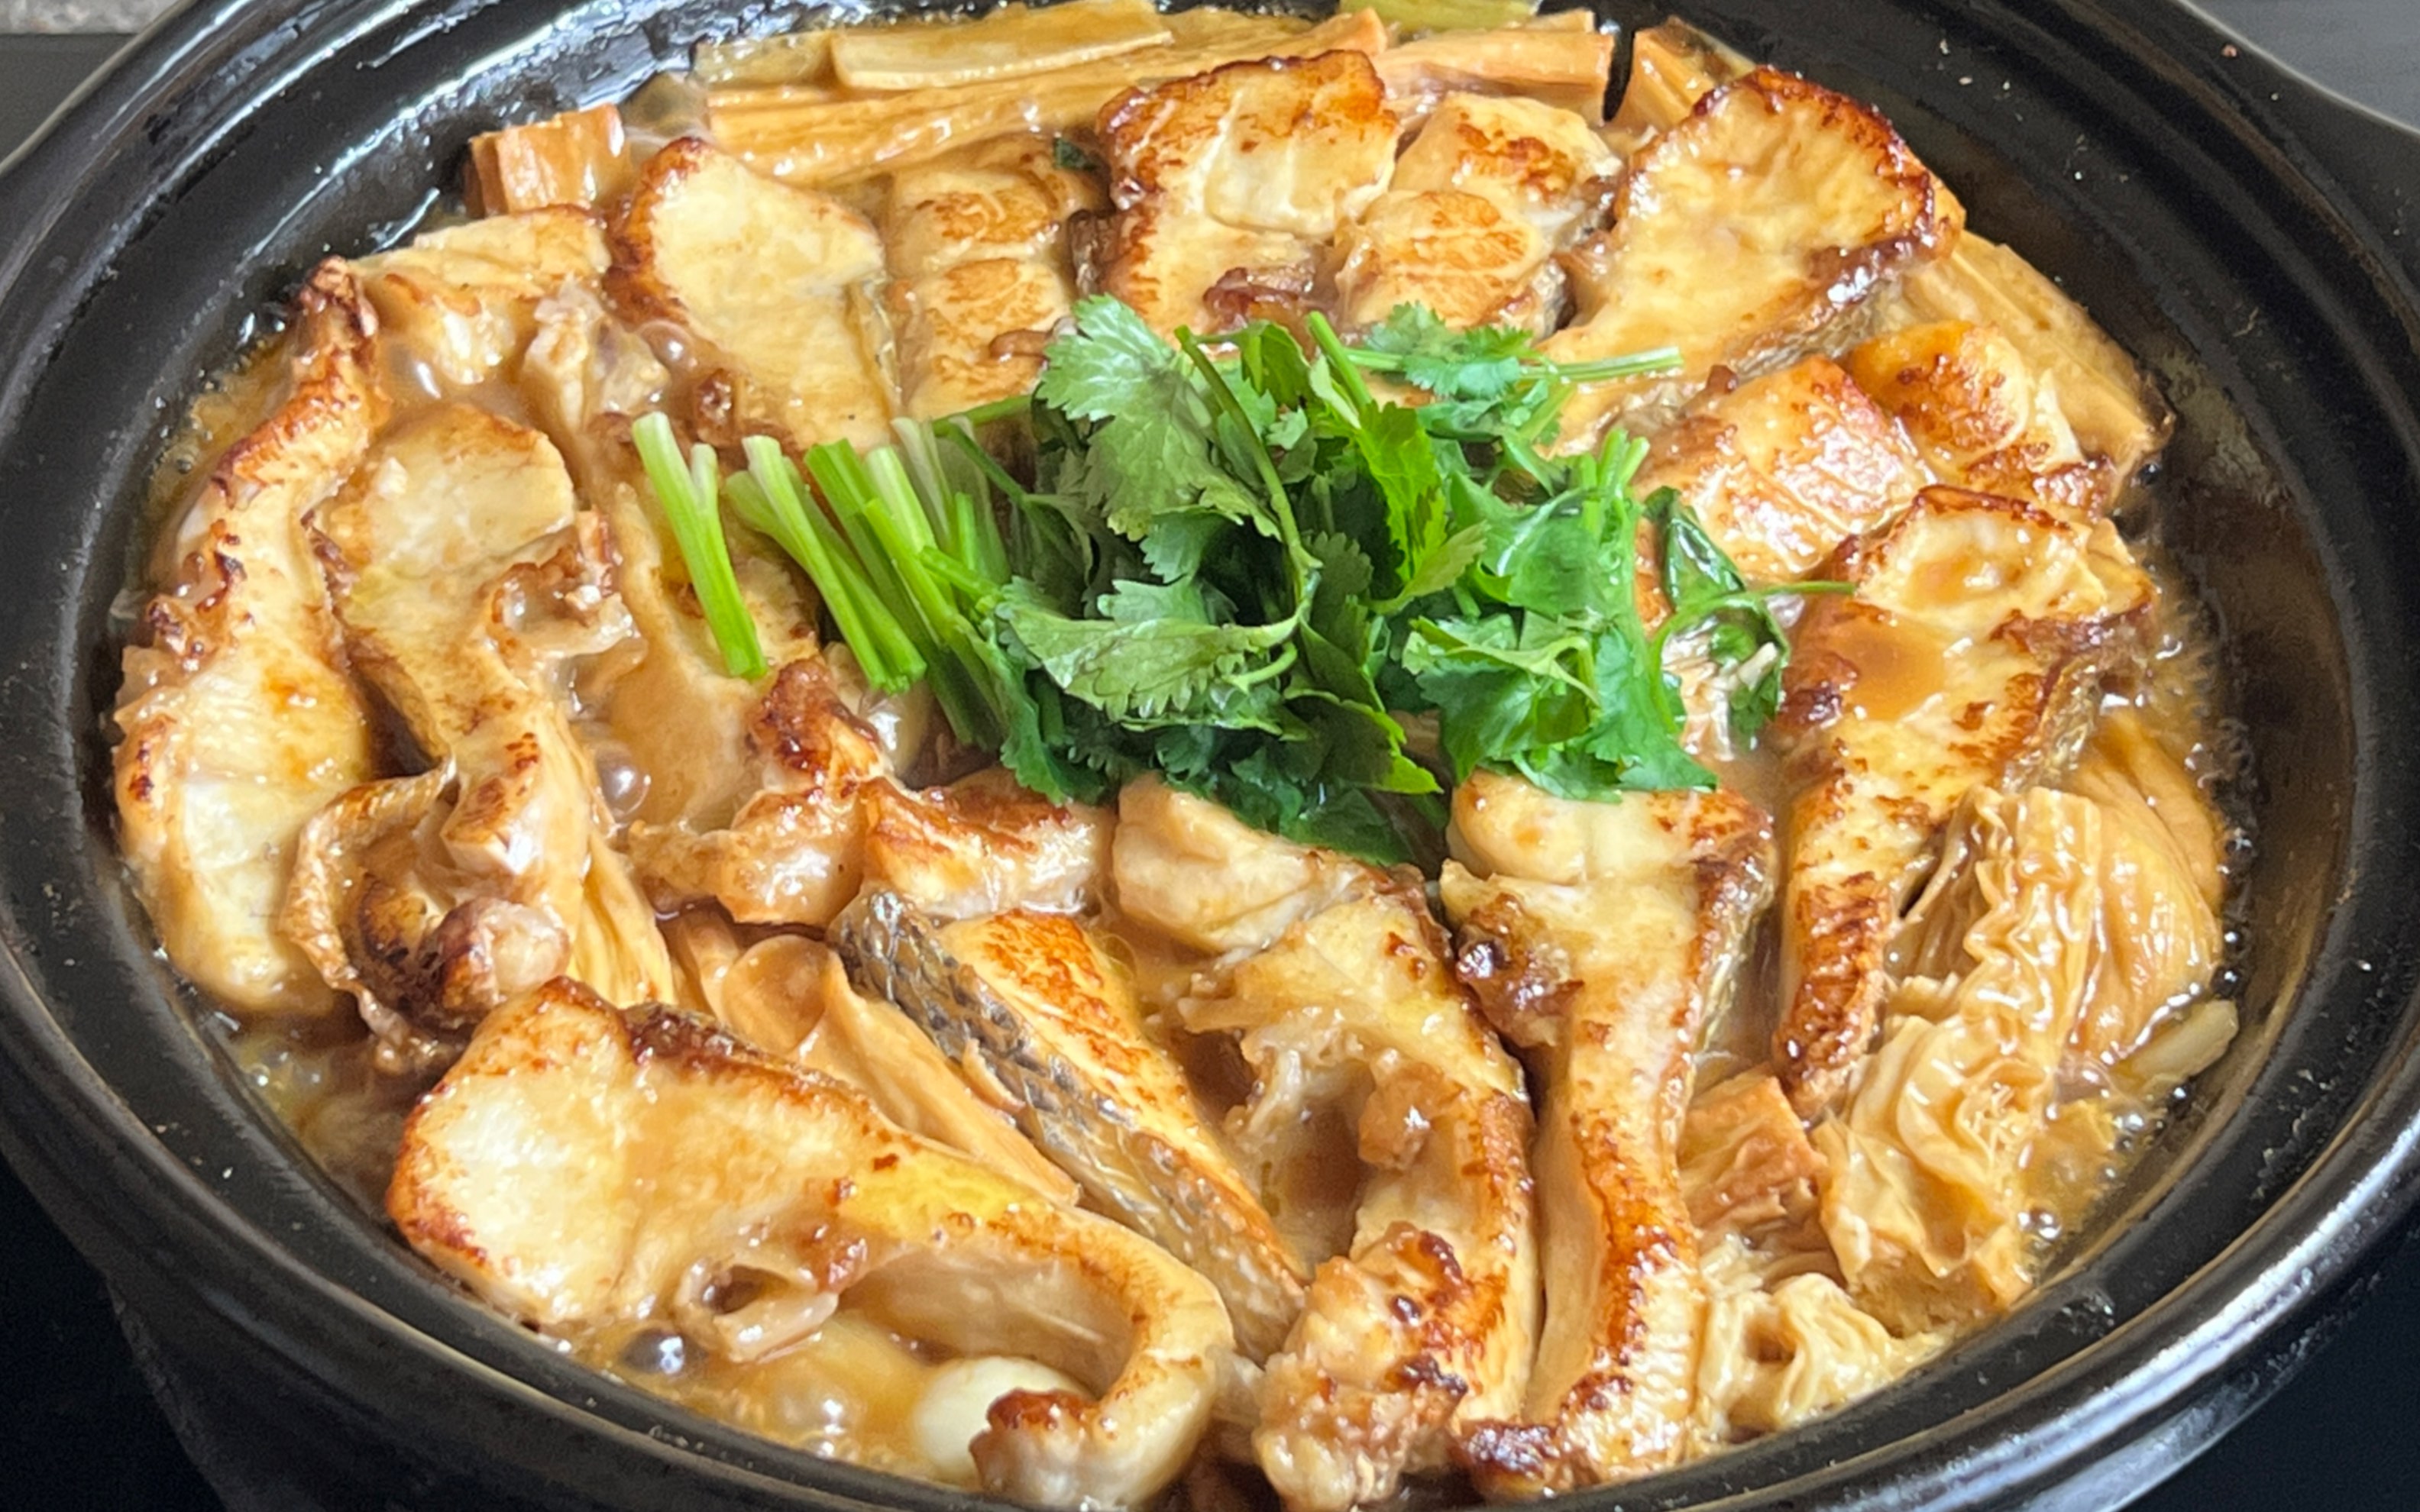 腐竹焖鱼腩做法,出锅热气腾腾,鲜香入味,汤汁拌饭也能吃两碗